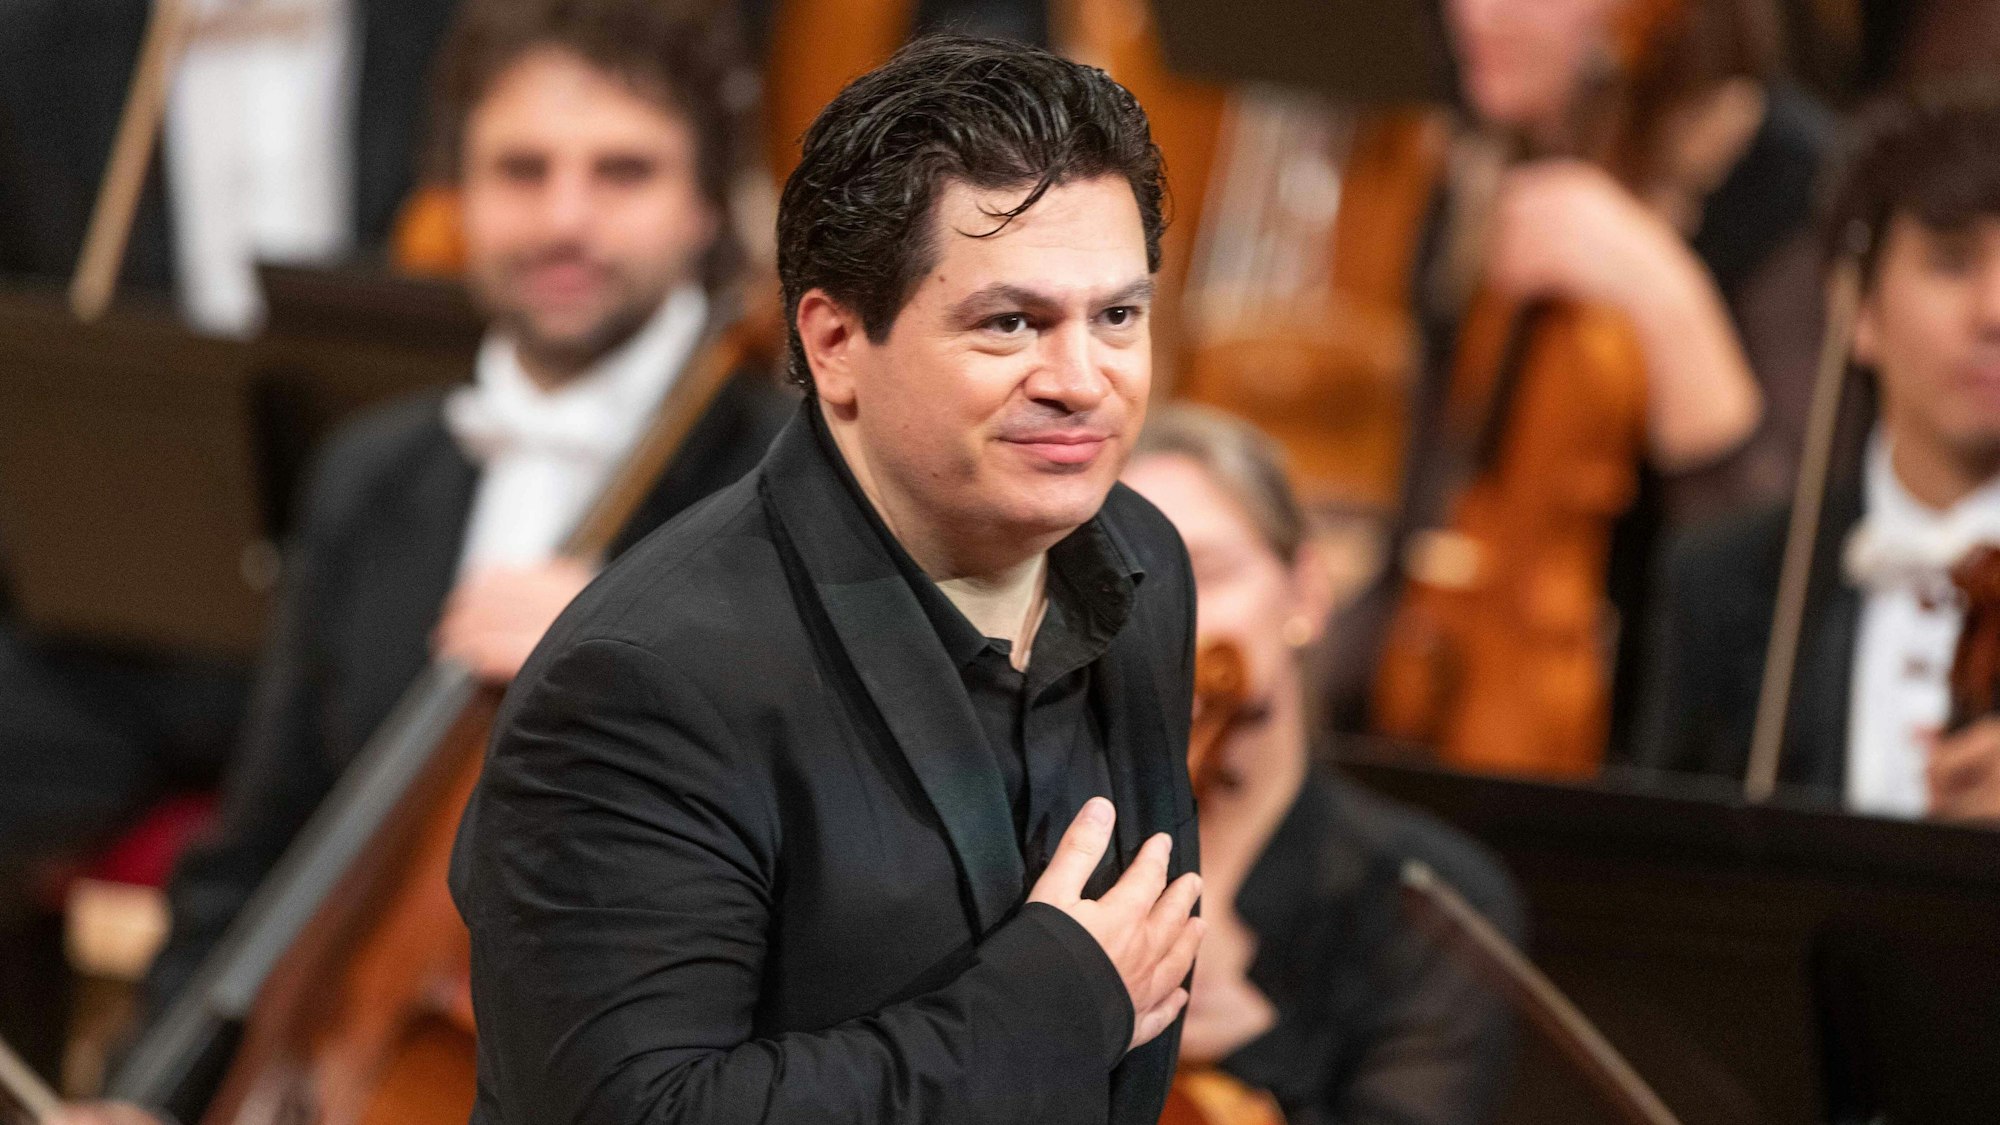 Cristian Măcelaru verbeugt sich beim Schlussapplaus eines WDR-Konzerts in der Kölner Philharmonie